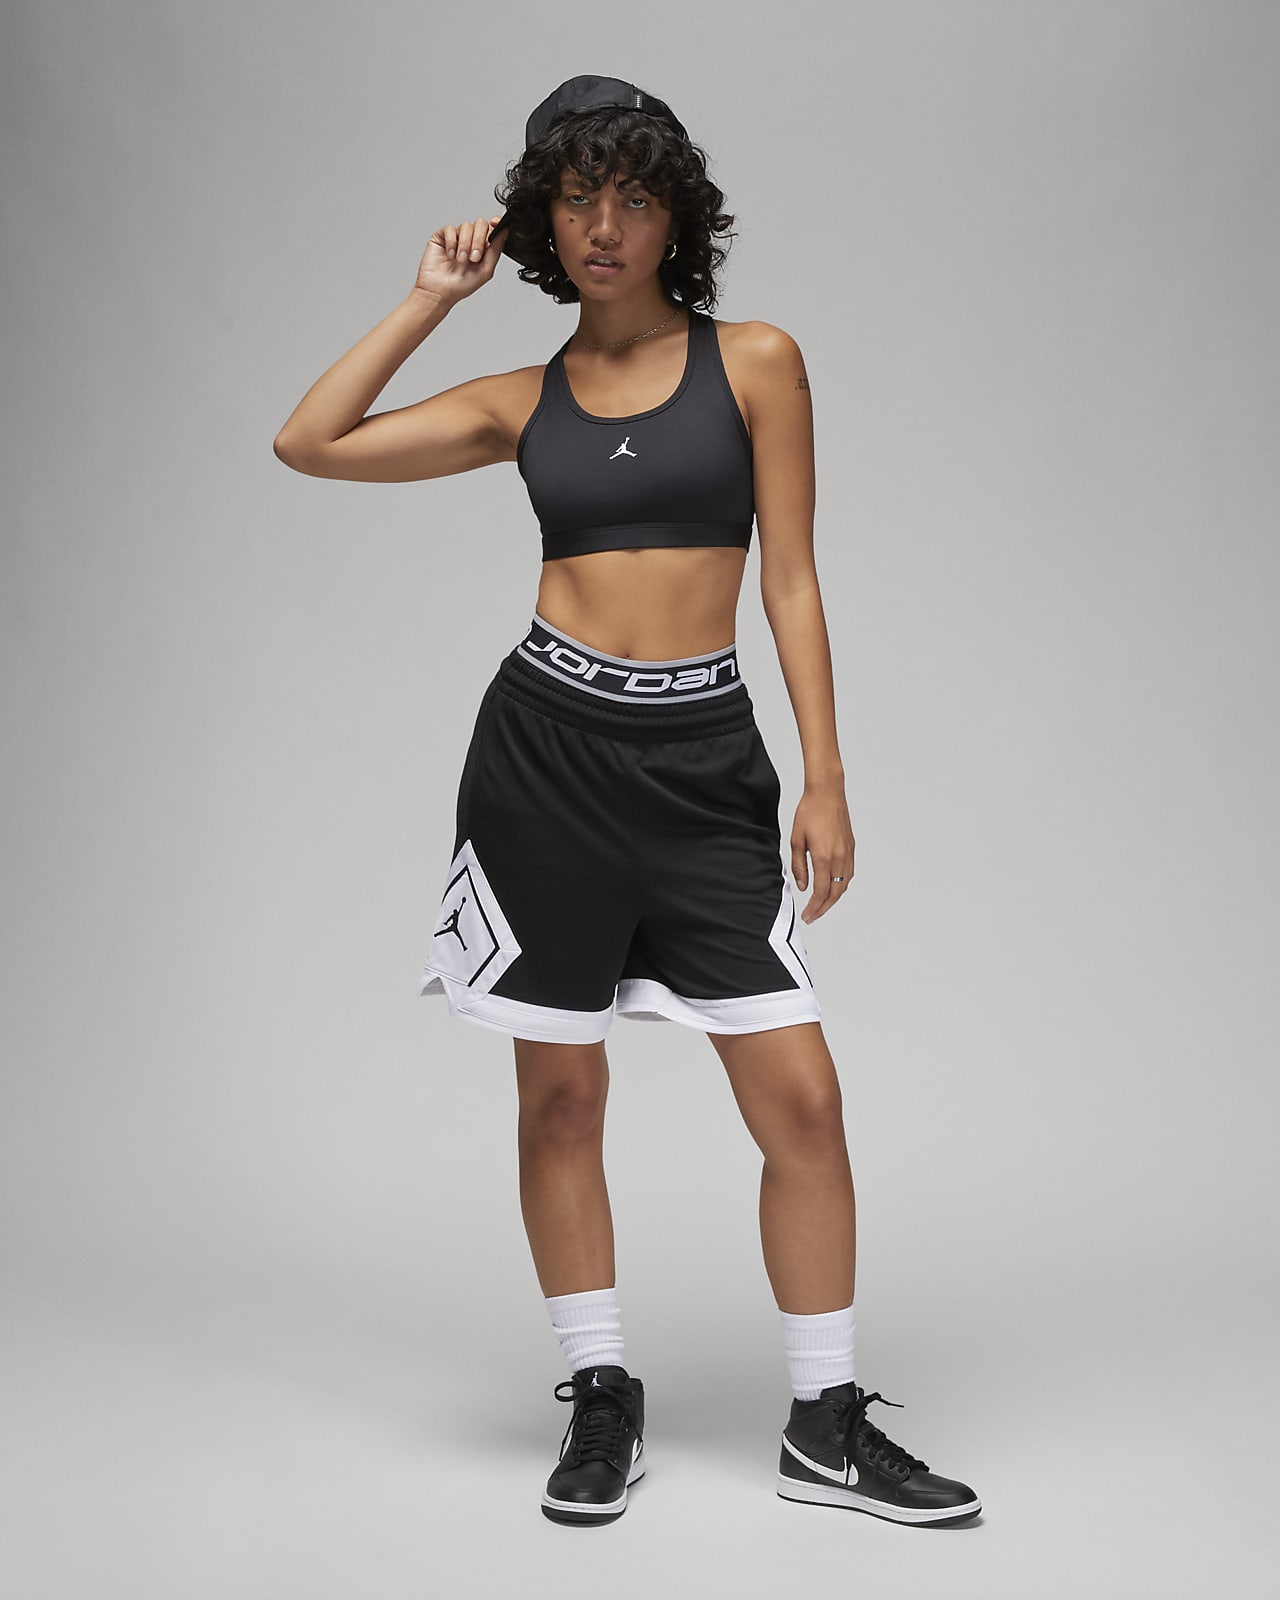 Women's Pockets Sports Bras. Nike LU